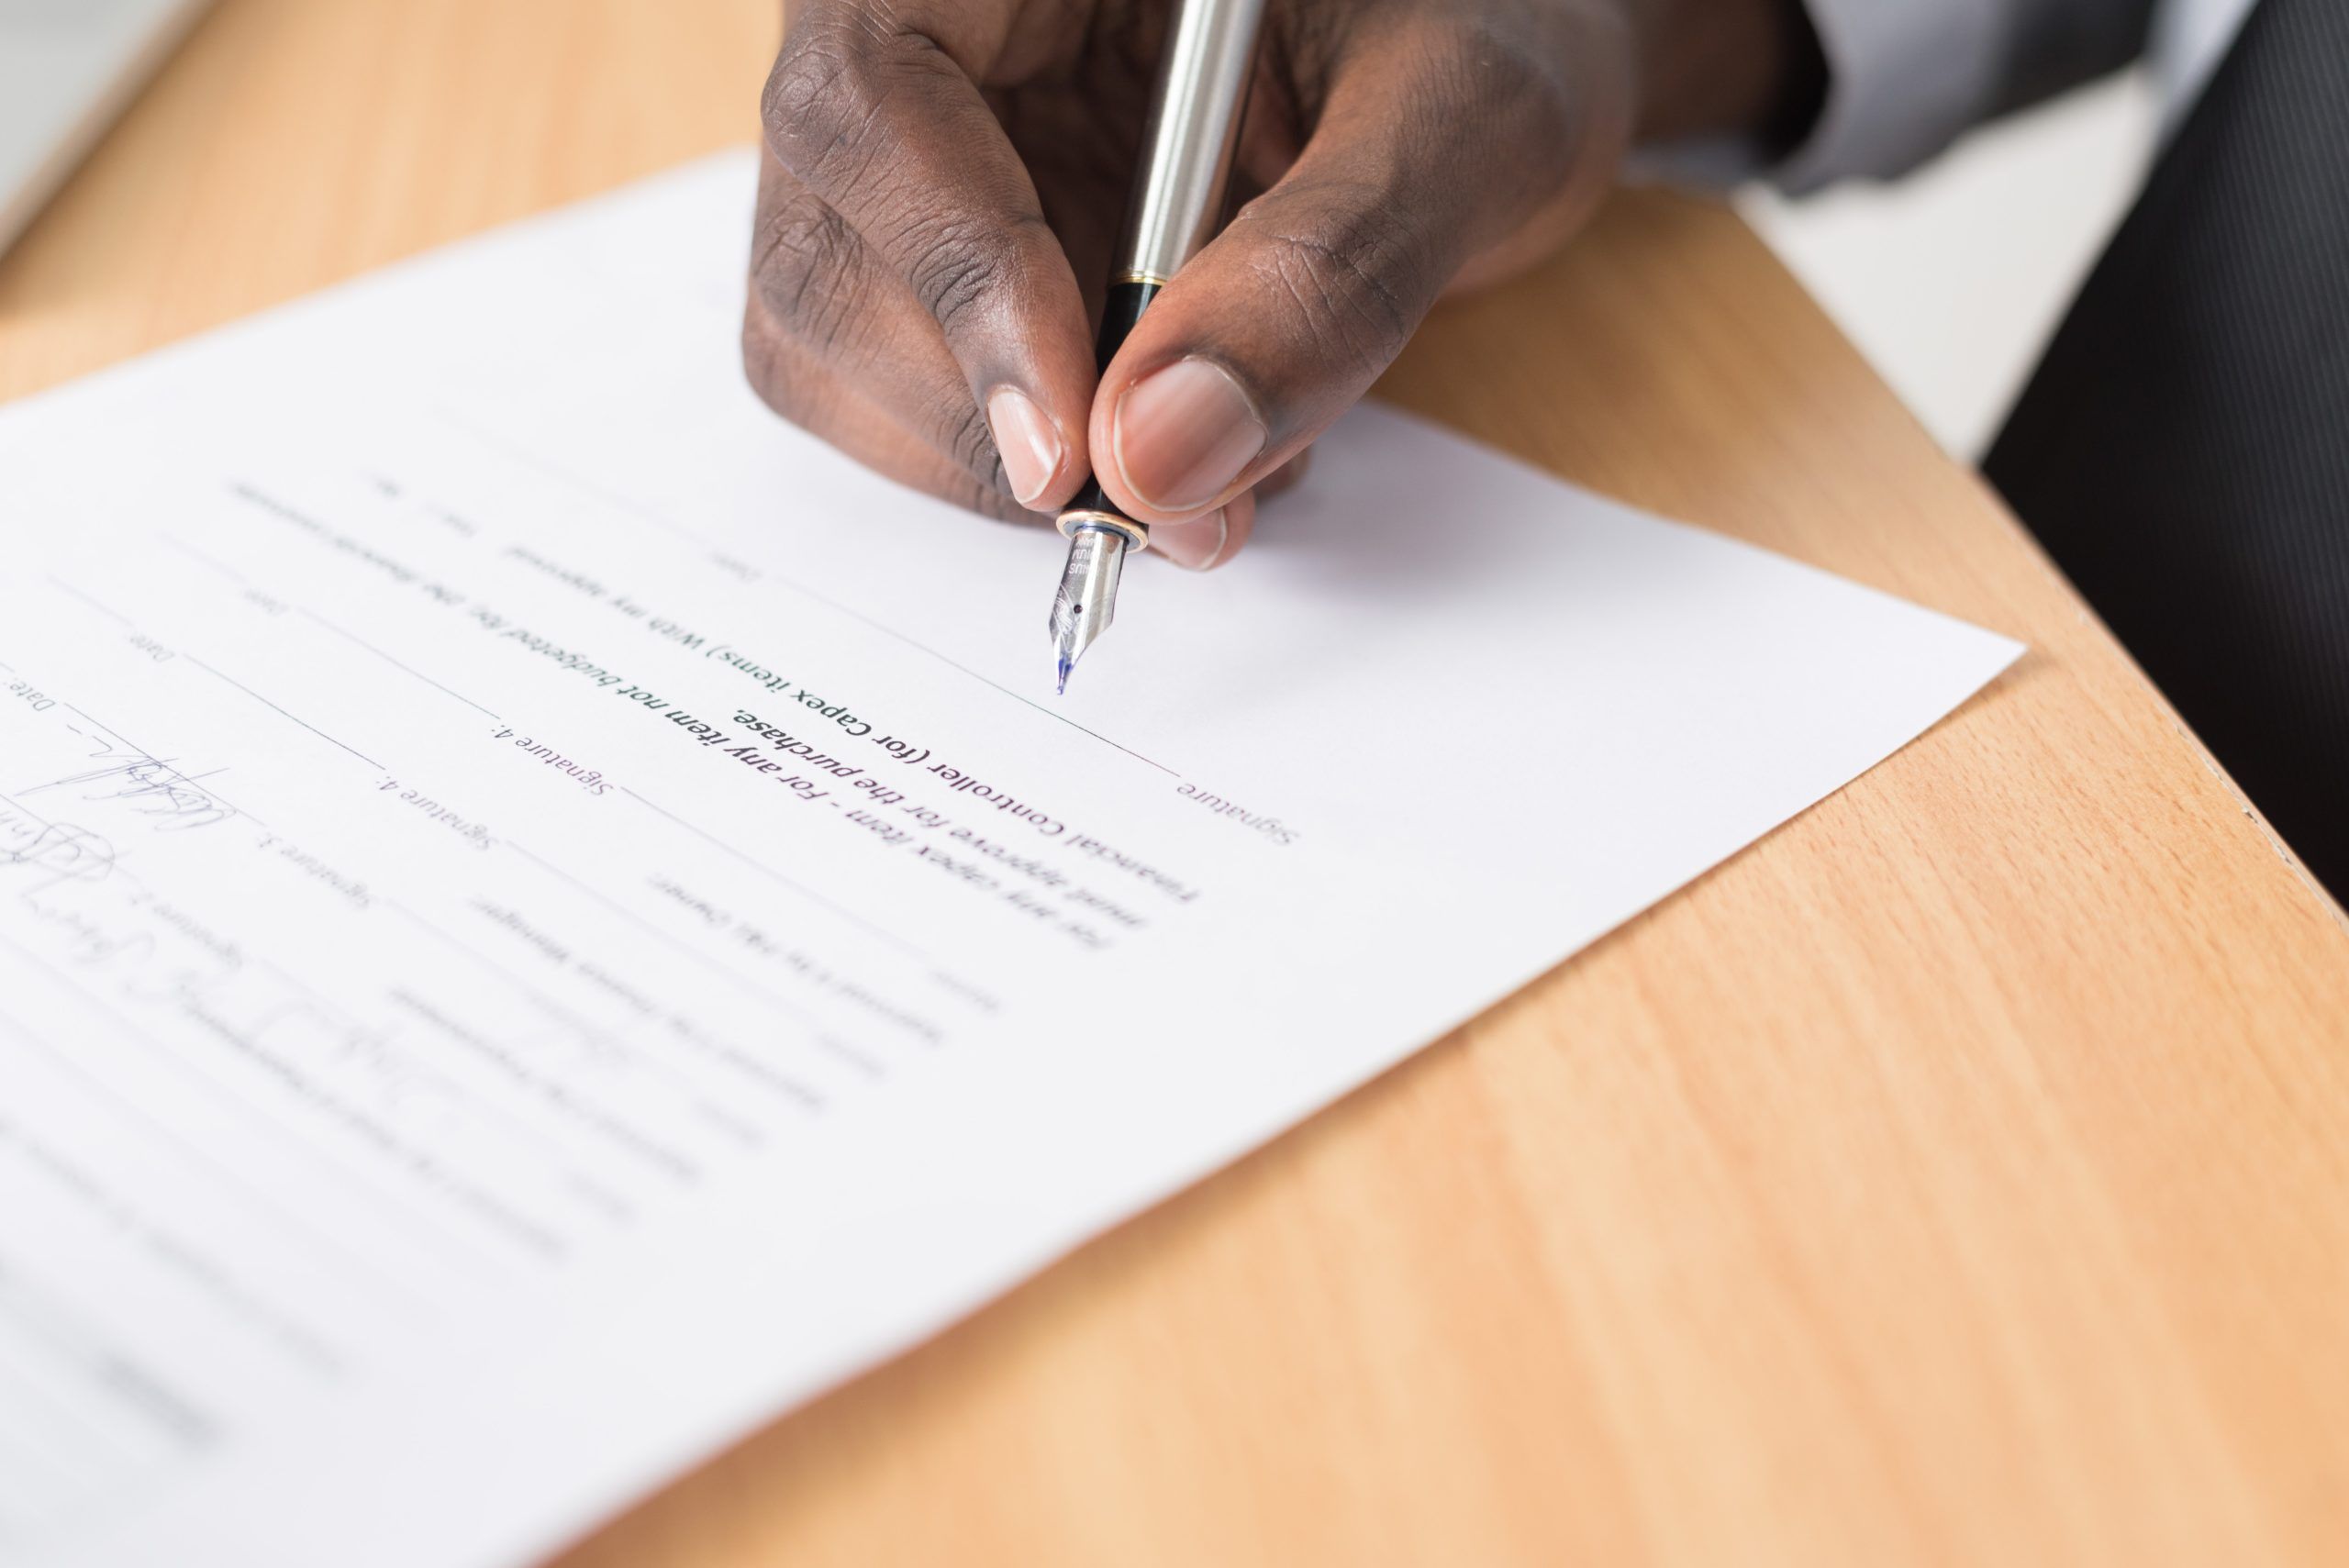 Signing of IVA documentation